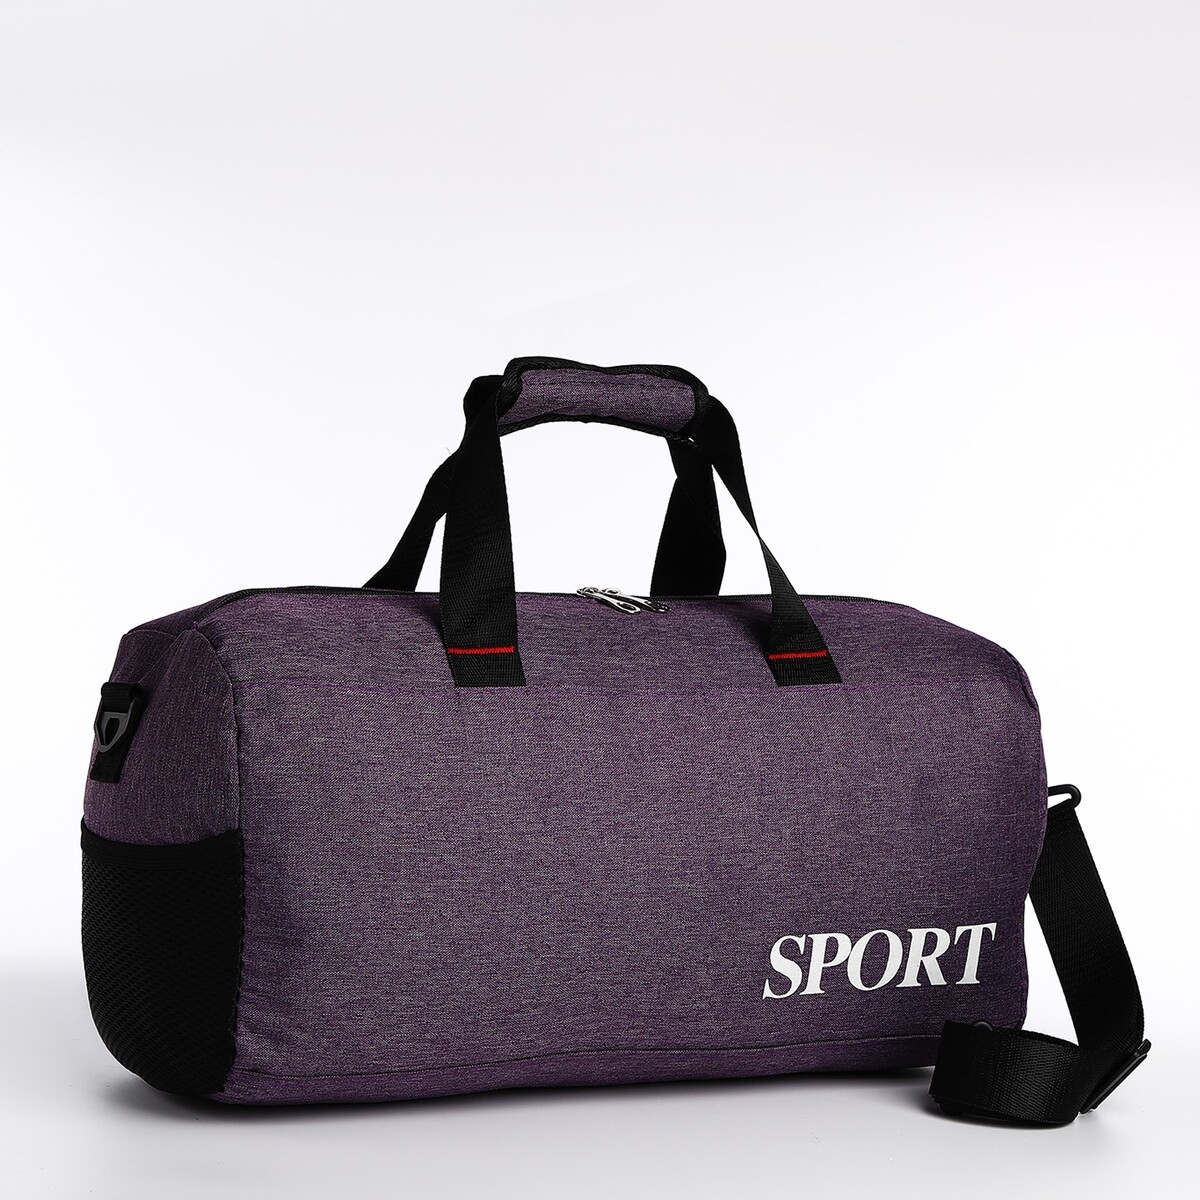 Сумка спортивная на молнии, длинный ремень, цвет фиолетовый сумка спортивная котик 40х21х24см фиолетовый